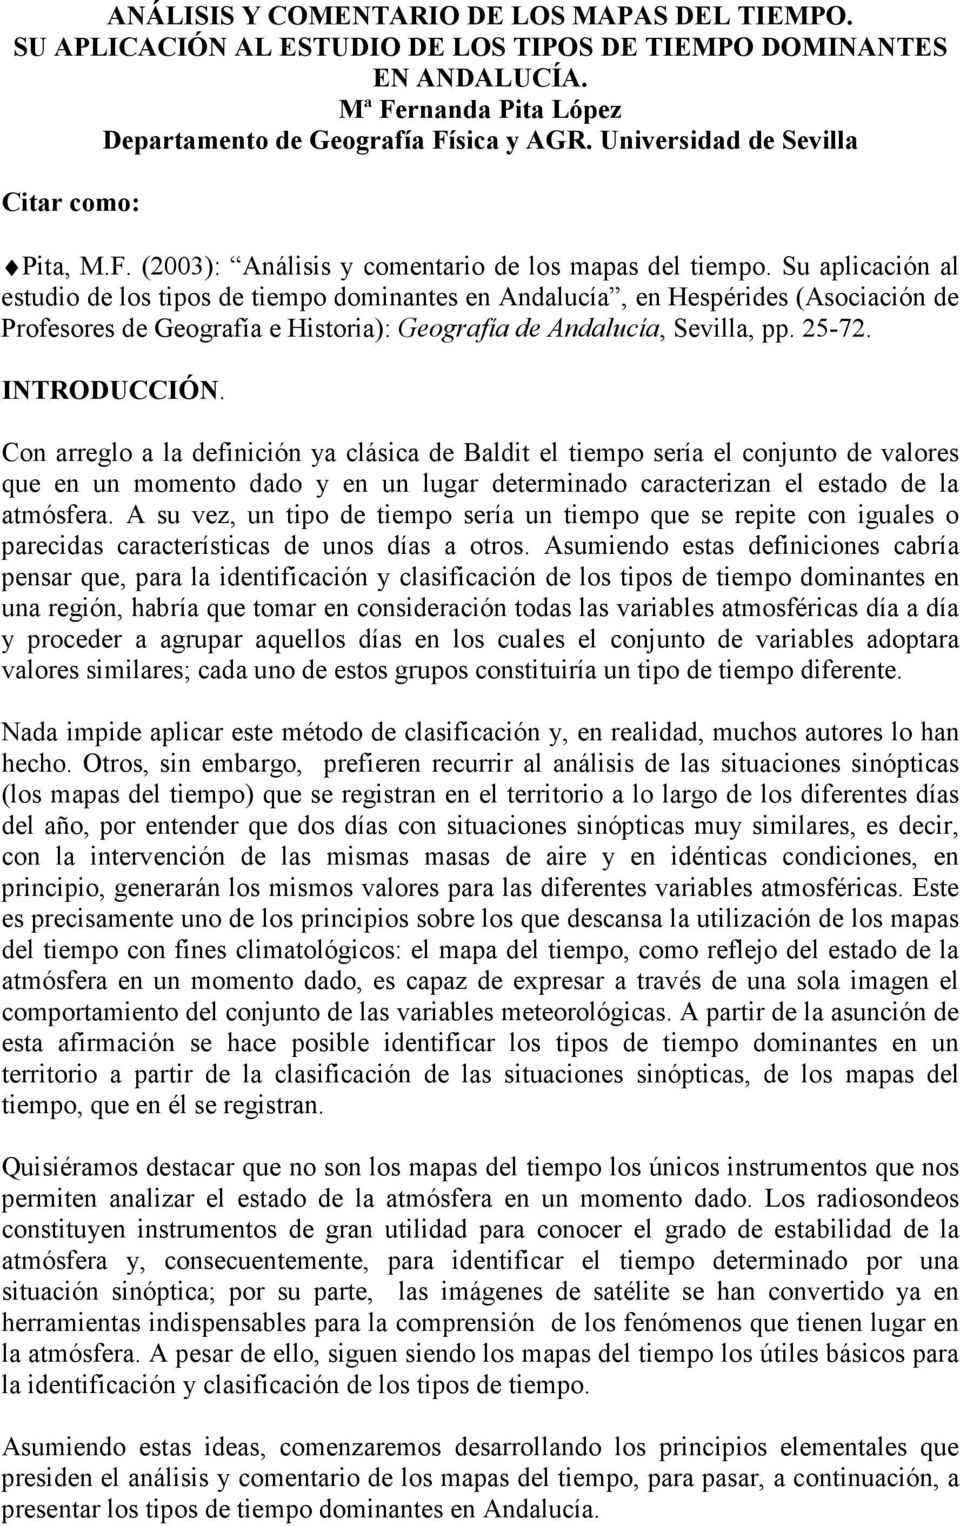 Su aplicación al estudio de los tipos de tiempo dominantes en Andalucía, en Hespérides (Asociación de Profesores de Geografía e Historia): Geografía de Andalucía, Sevilla, pp. 25-72. INTRODUCCIÓN.